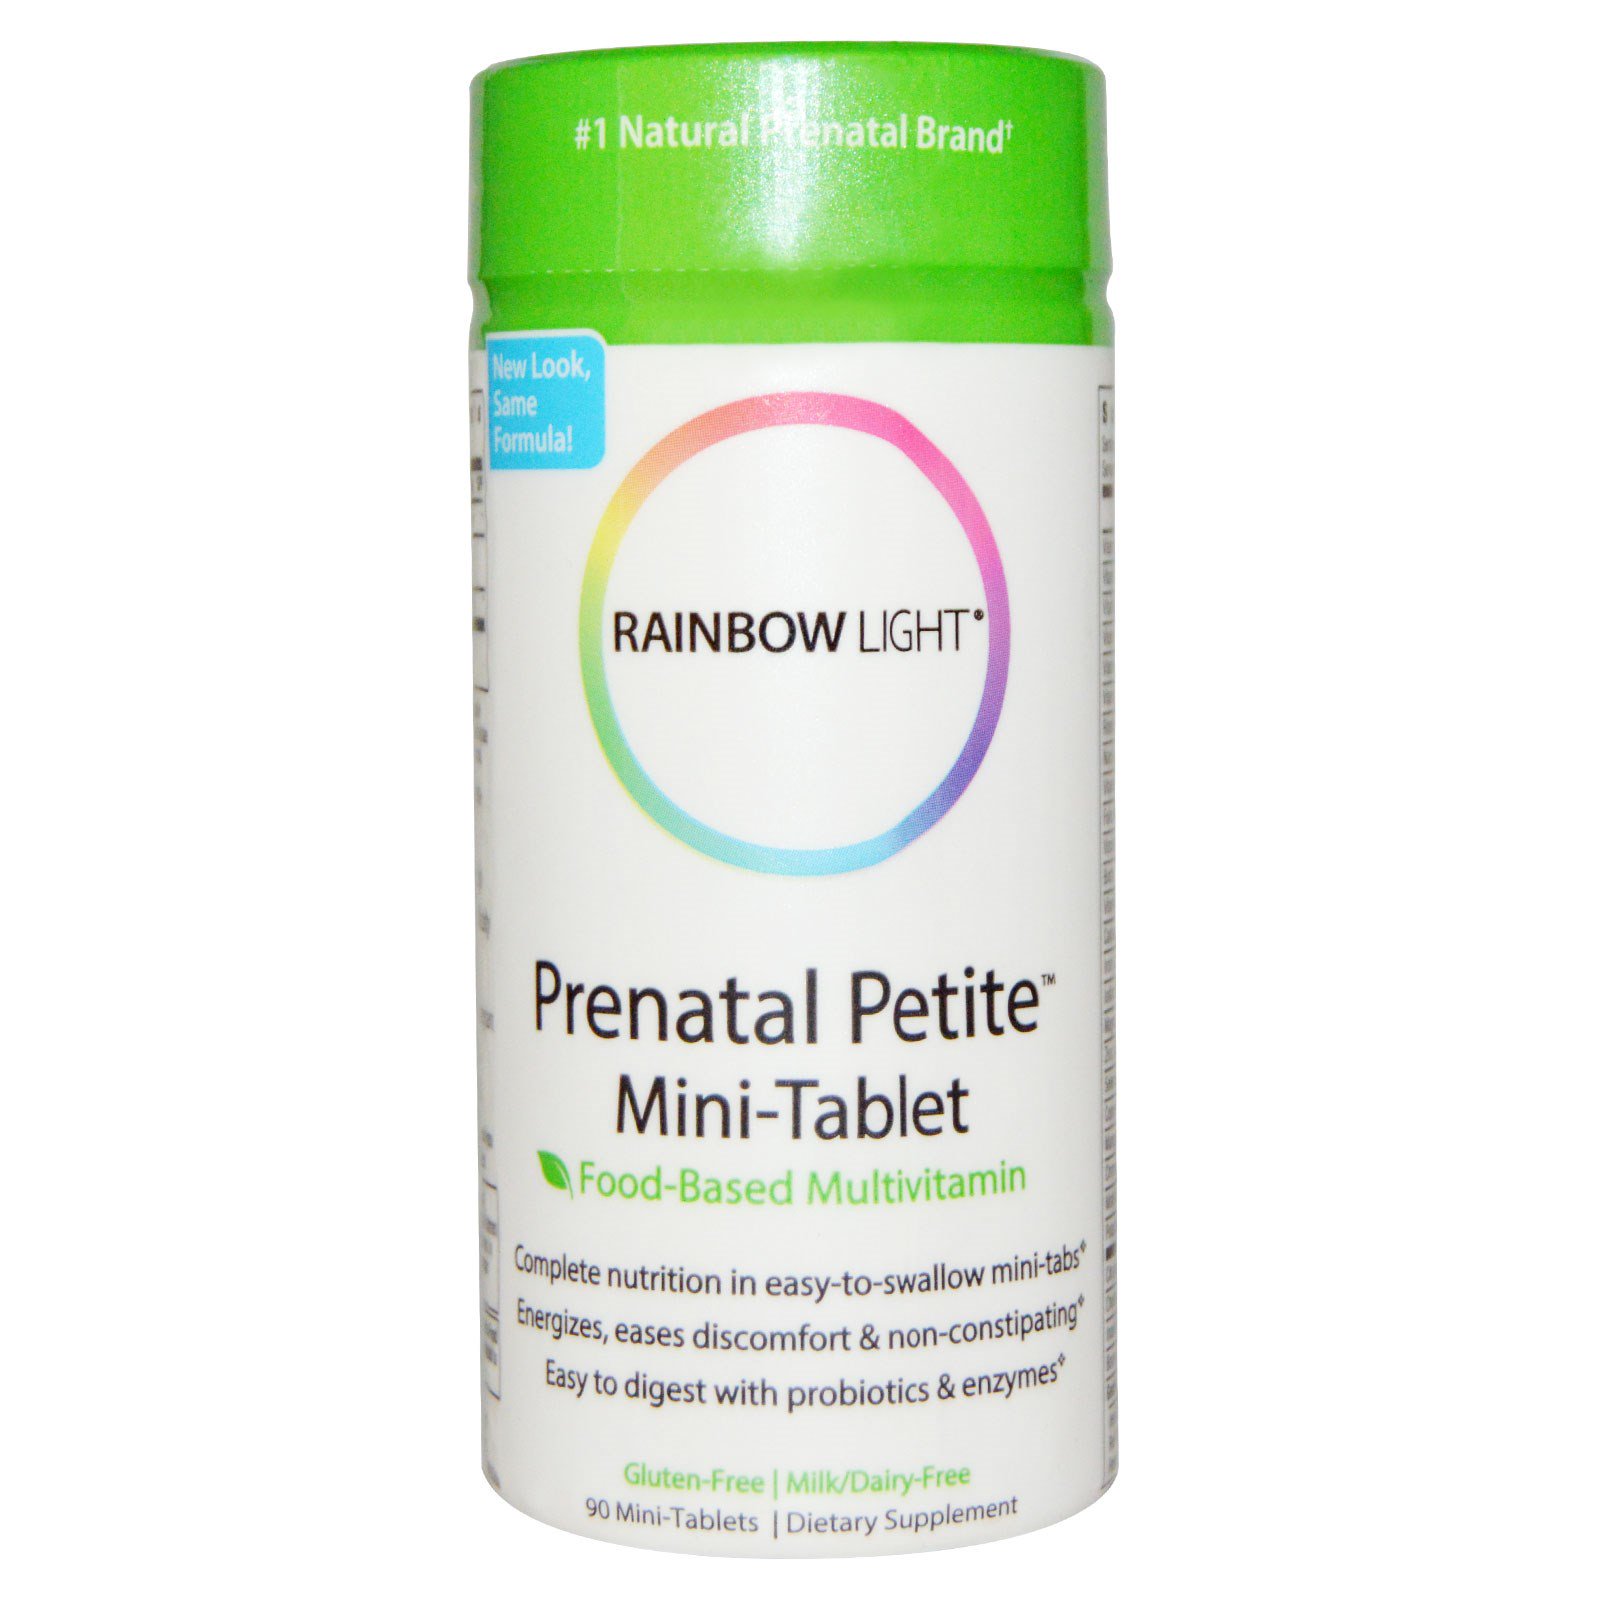 Rainbow Light, Пренатальные мультивитамины, 90 мини-таблеток